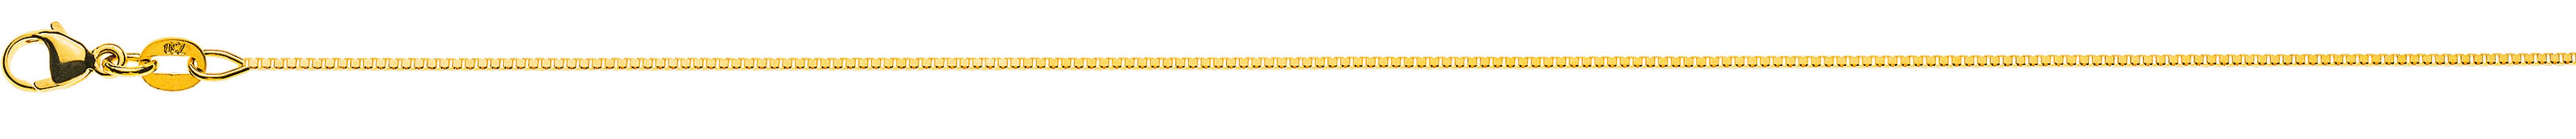 AURONOS Prestige Halskette Gelbgold 18K Venezianerkette diamantiert 38cm 0.8mm